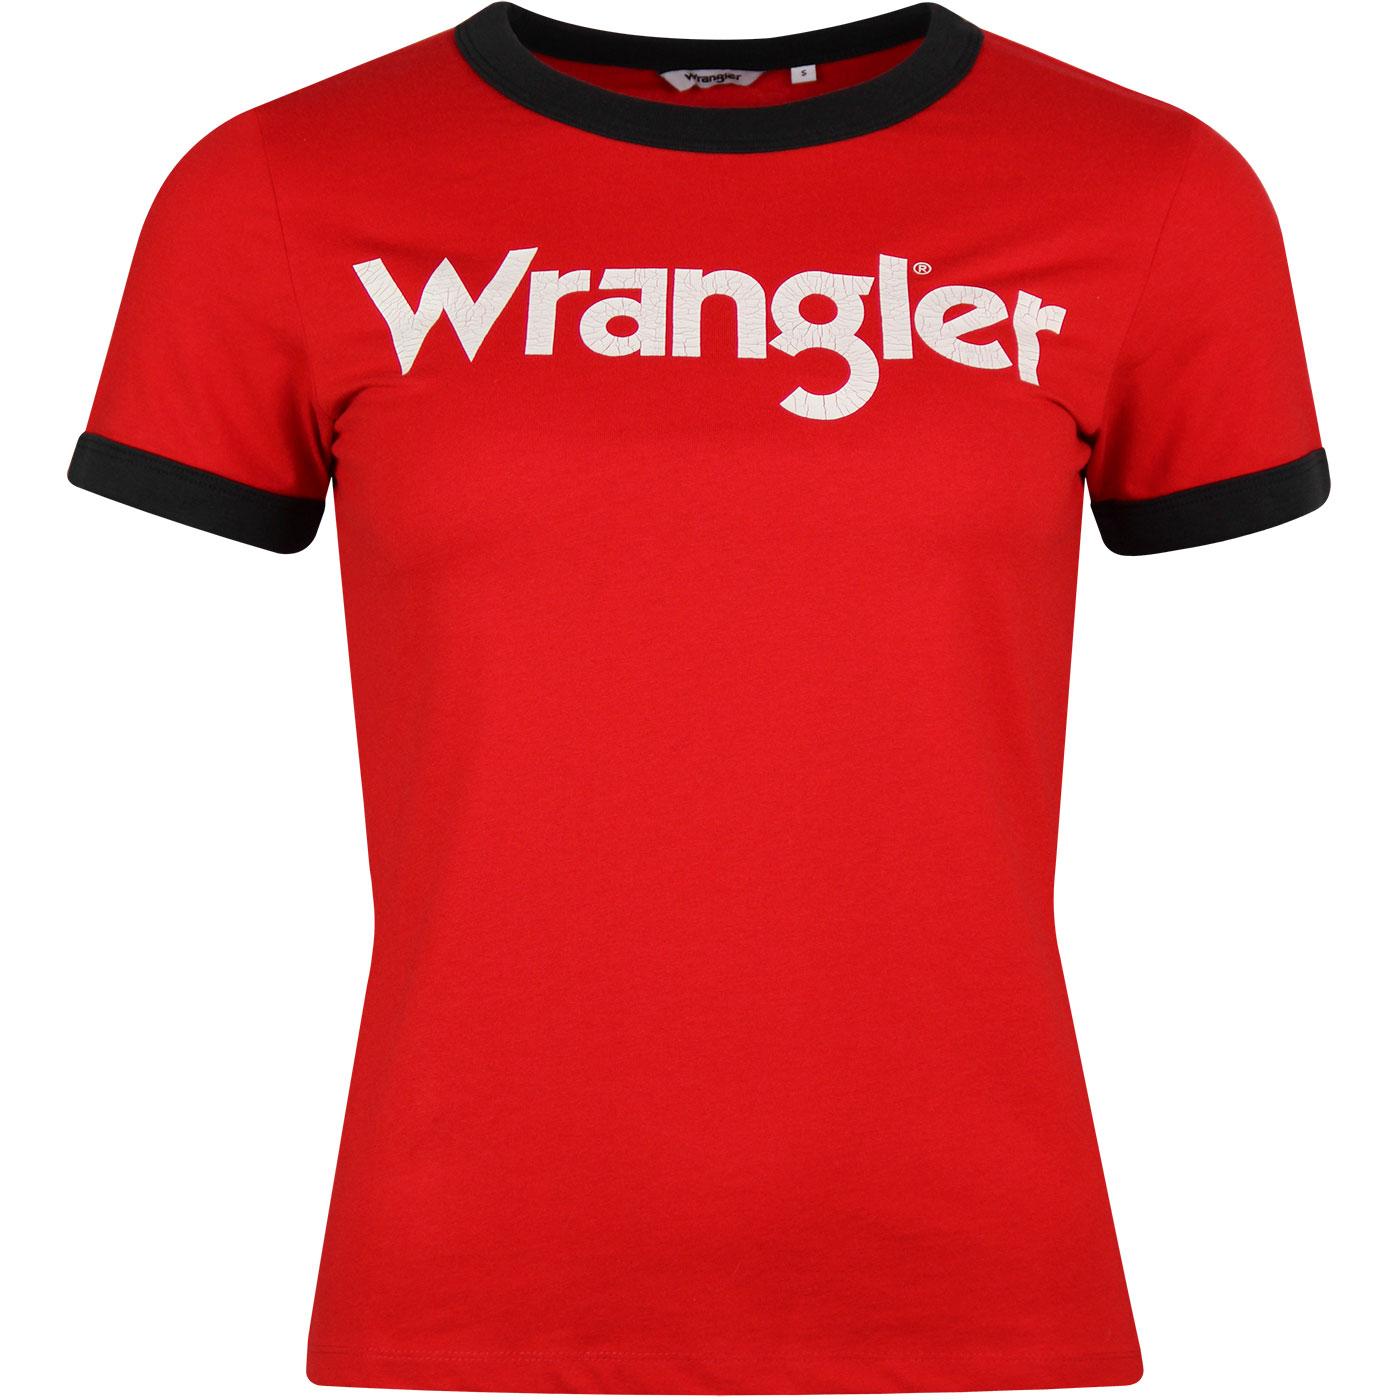 WRANGLER Womens Retro 70s Logo Ringer Tee Formula Red